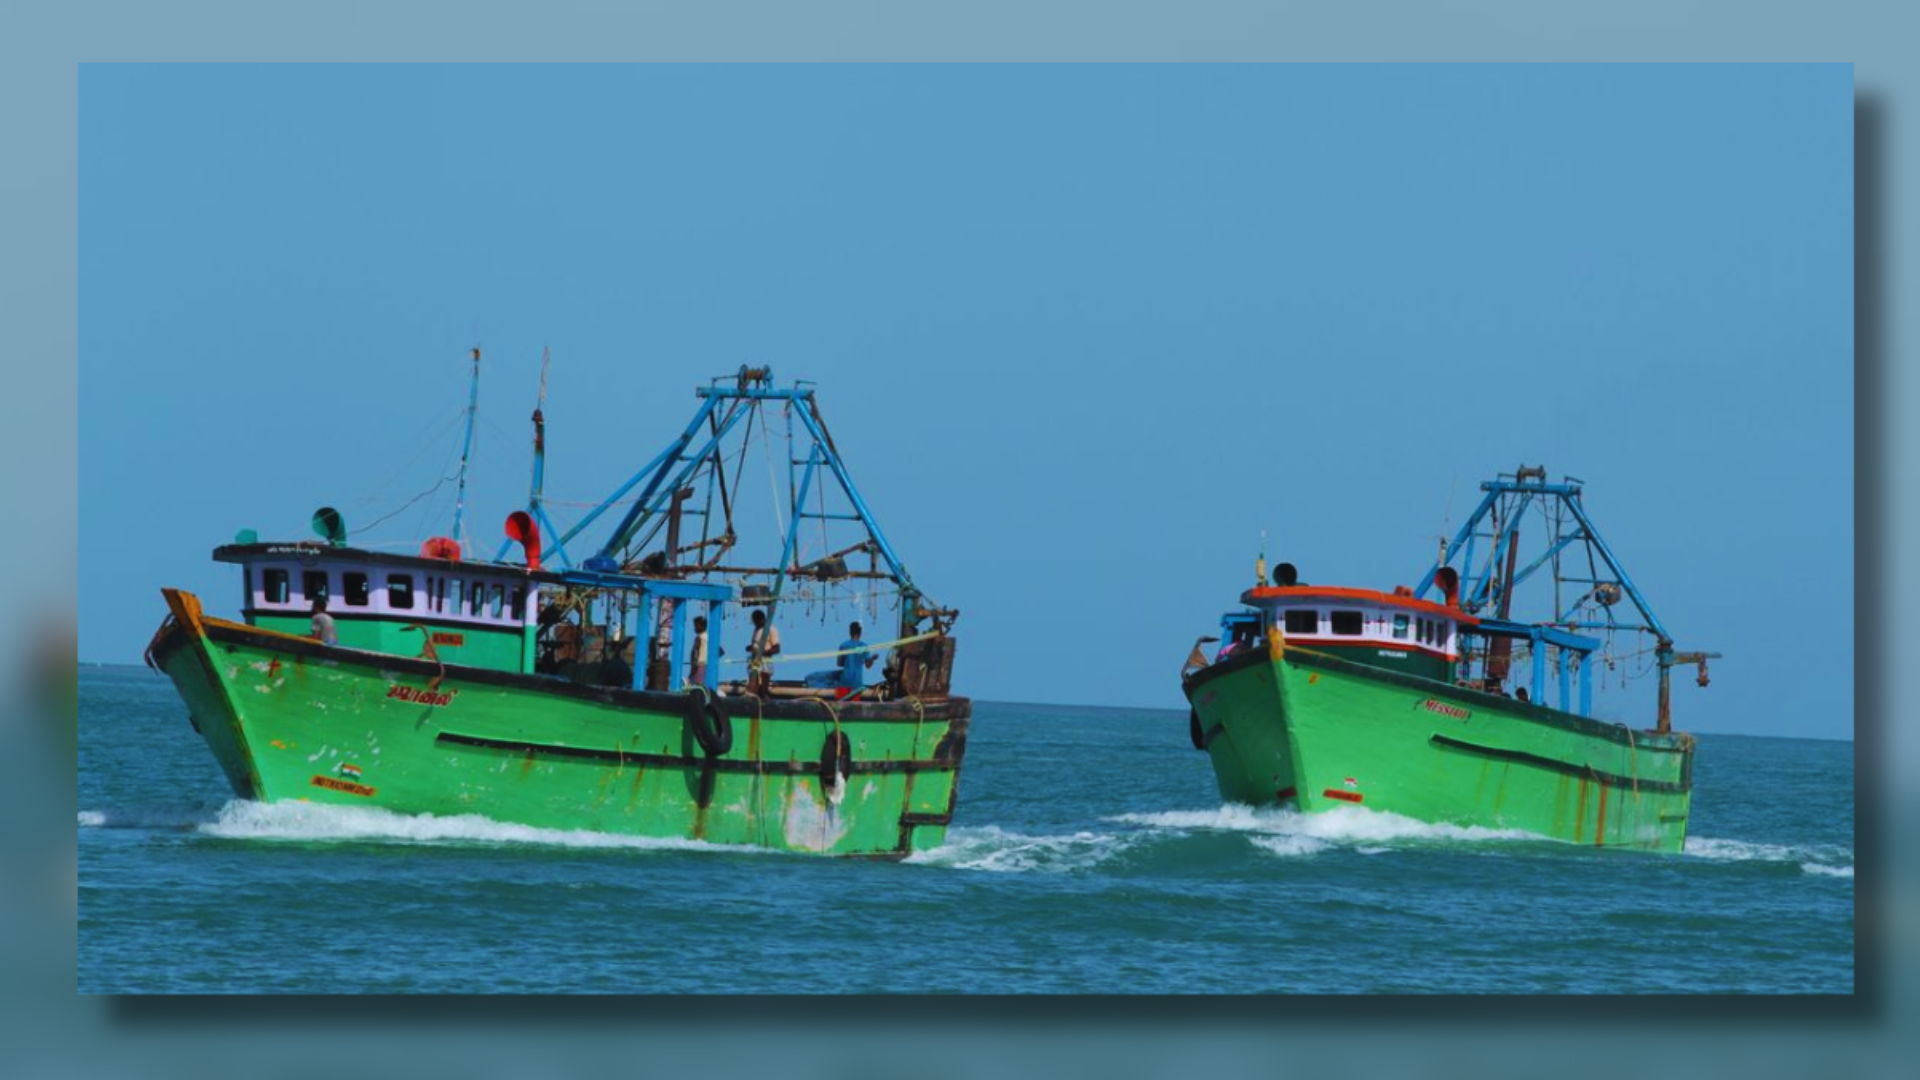 19 Fishermen Detained By Sri Lanka Return Home